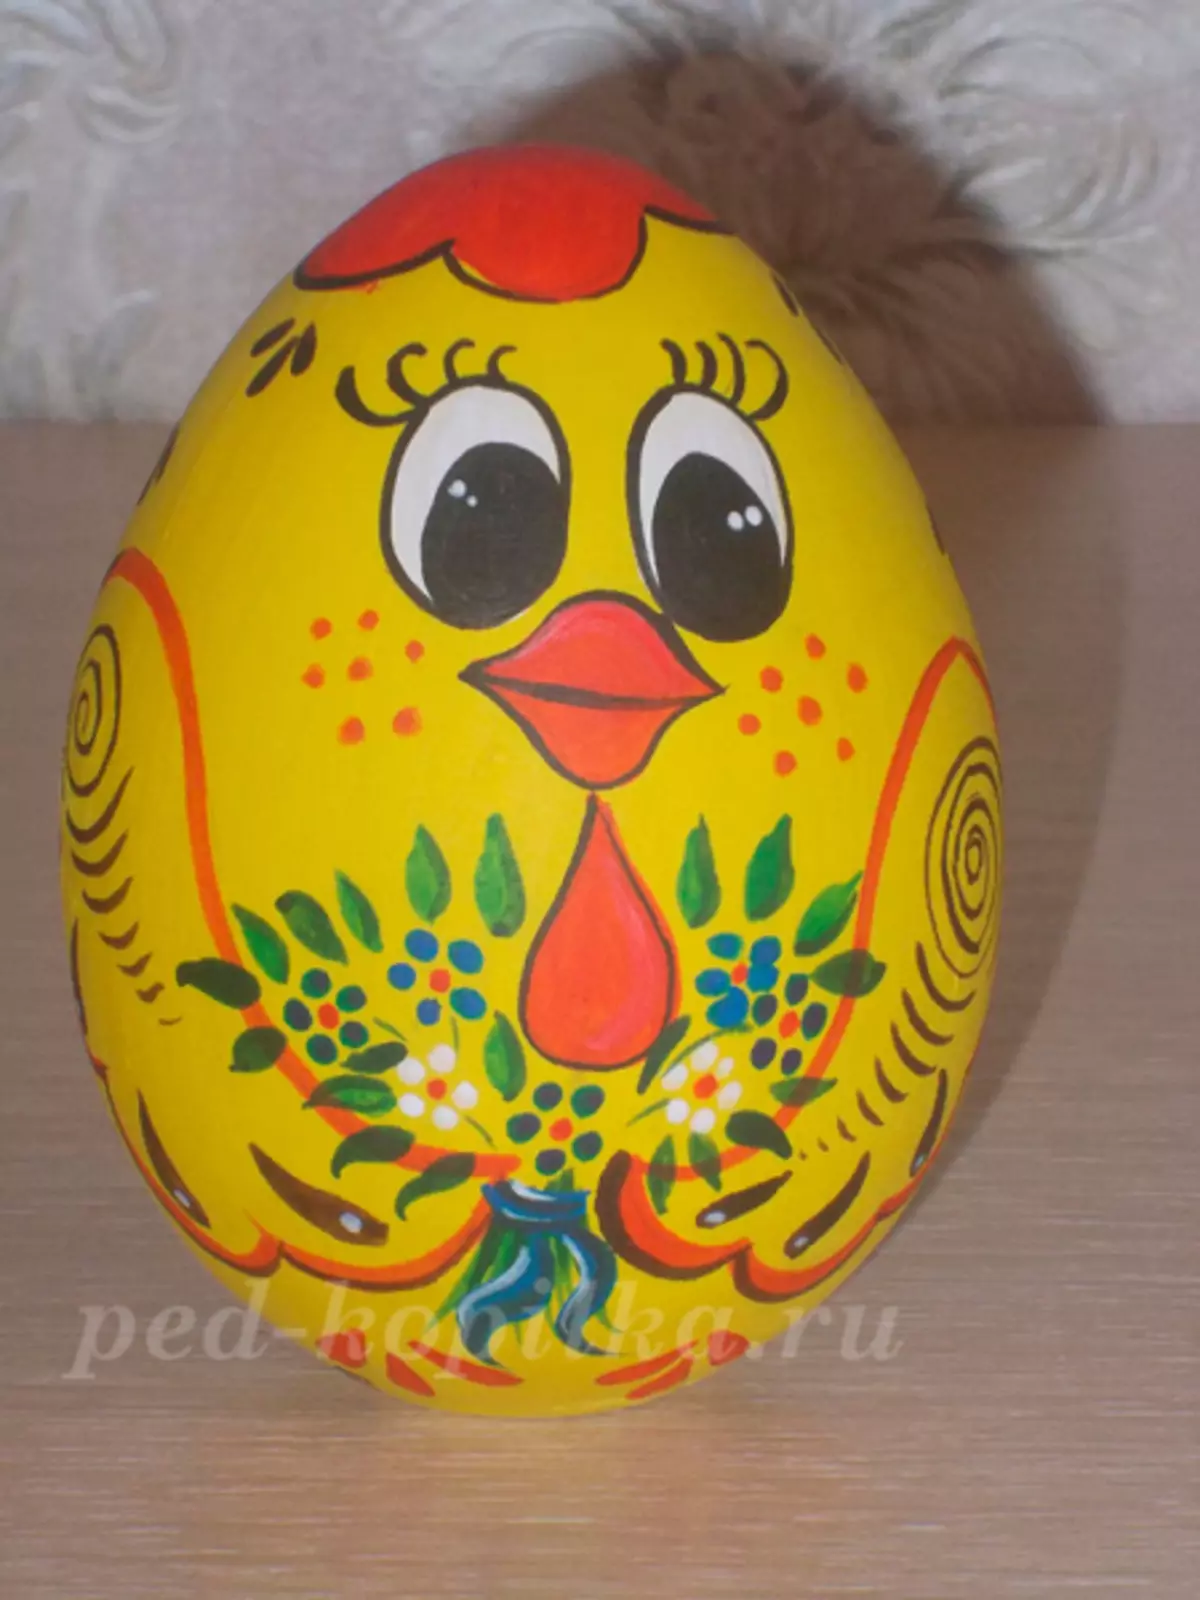 Pintura de ovos de Pascua faino vostede mesmo: clase mestra para principiantes